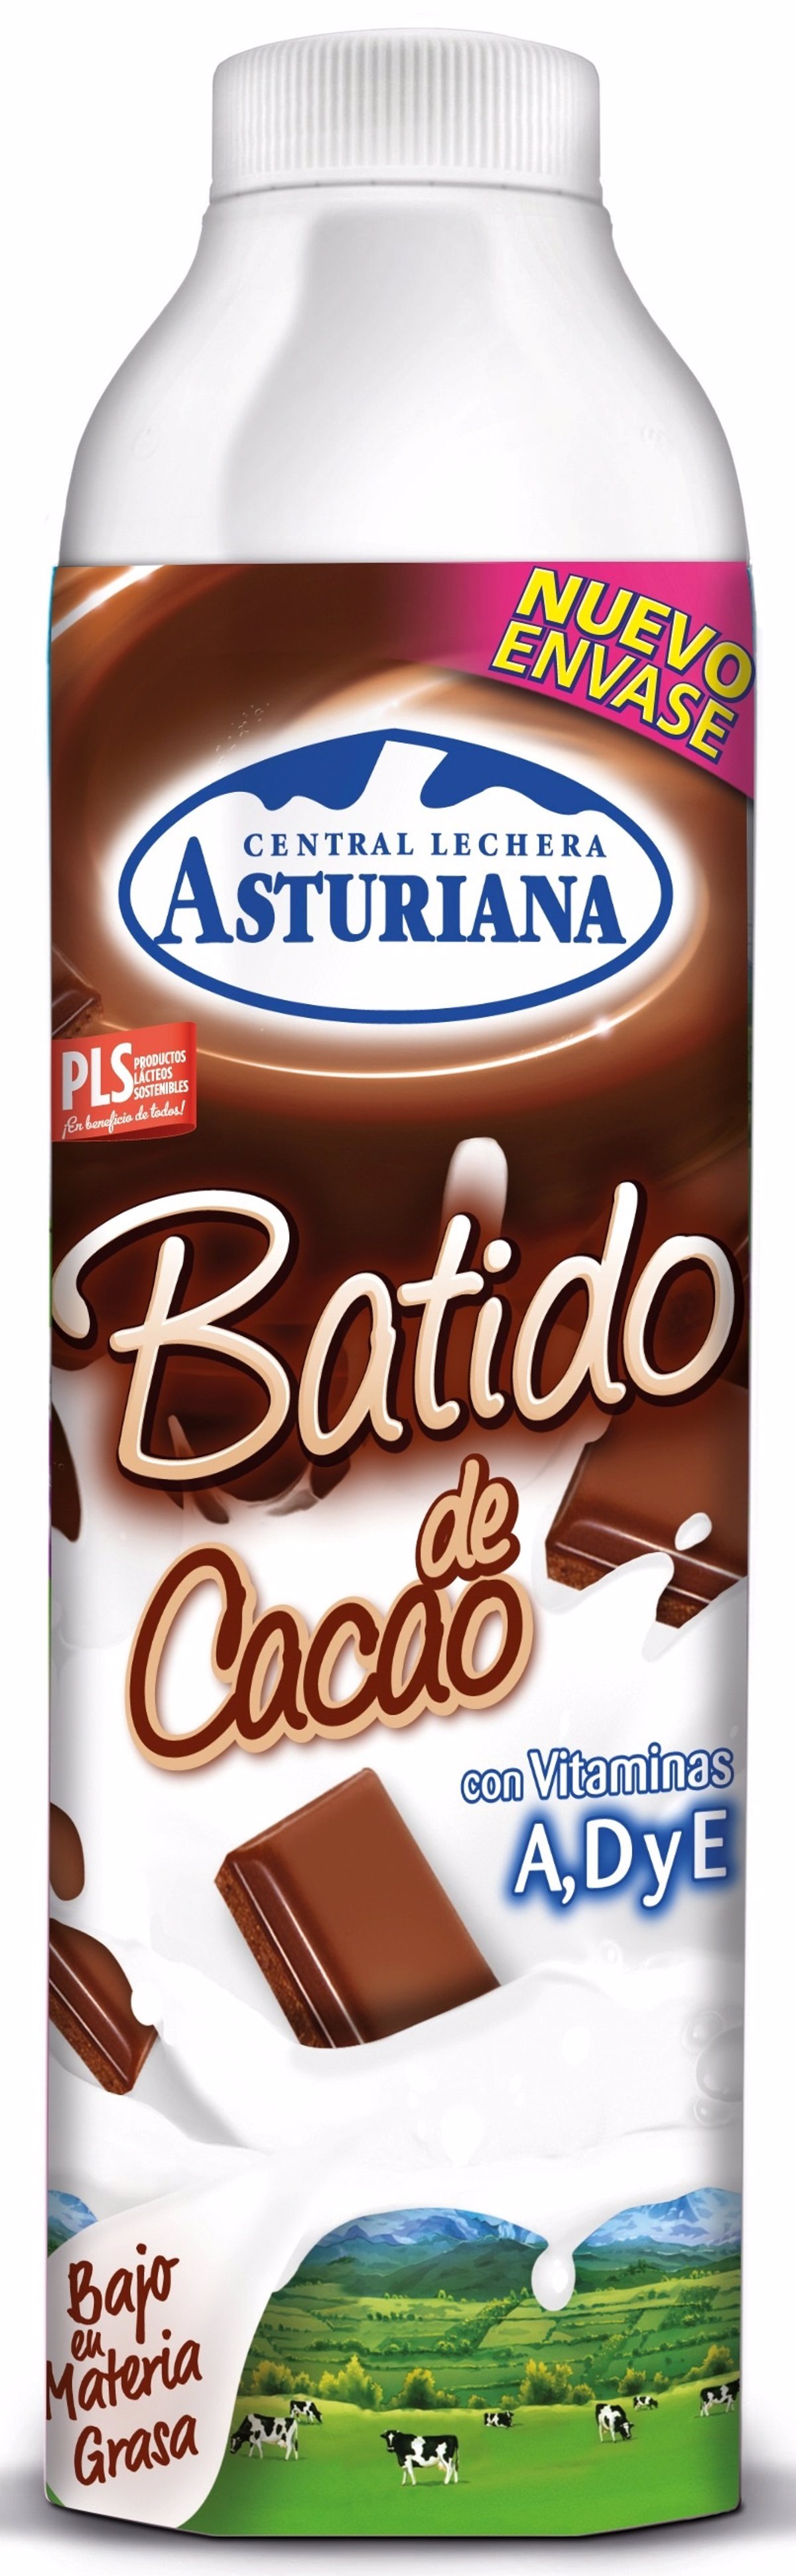 Batido de chocolate - Central Lechera Asturiana - 1 litro